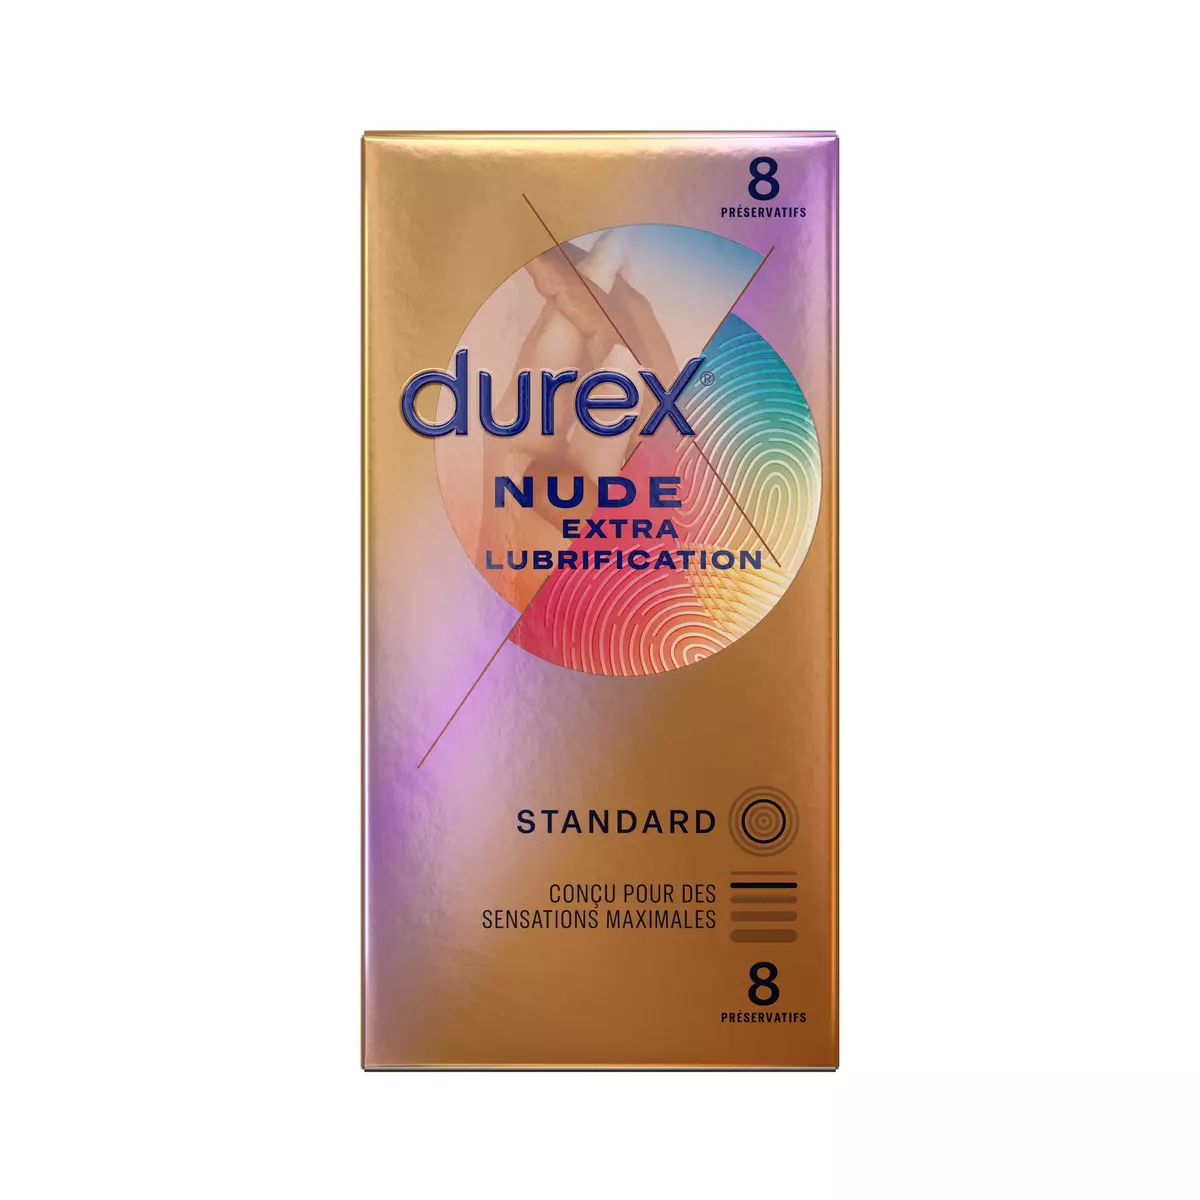 DUREX Nude Préservatifs extra lubrification standard 8 préservatifs